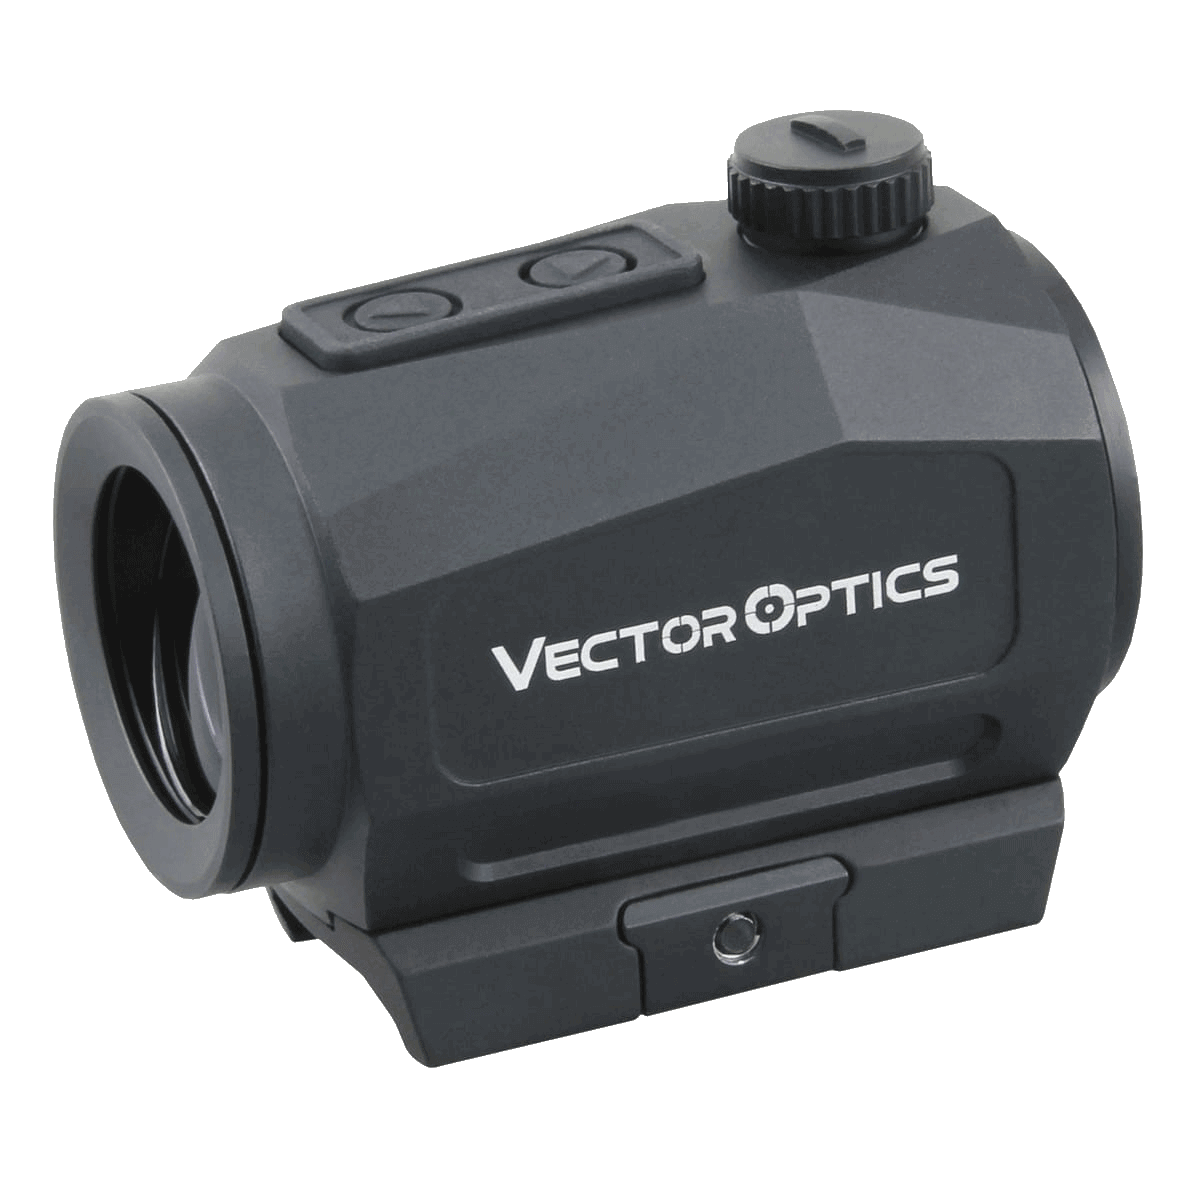 Коллиматор Vector Optics SCRAPPER 1x25 Genll 2MOA крепление на Weaver, совместим с прибором ночного видения (SCRD-46) купить по оптимальной цене,  доставка по России, гарантия качества